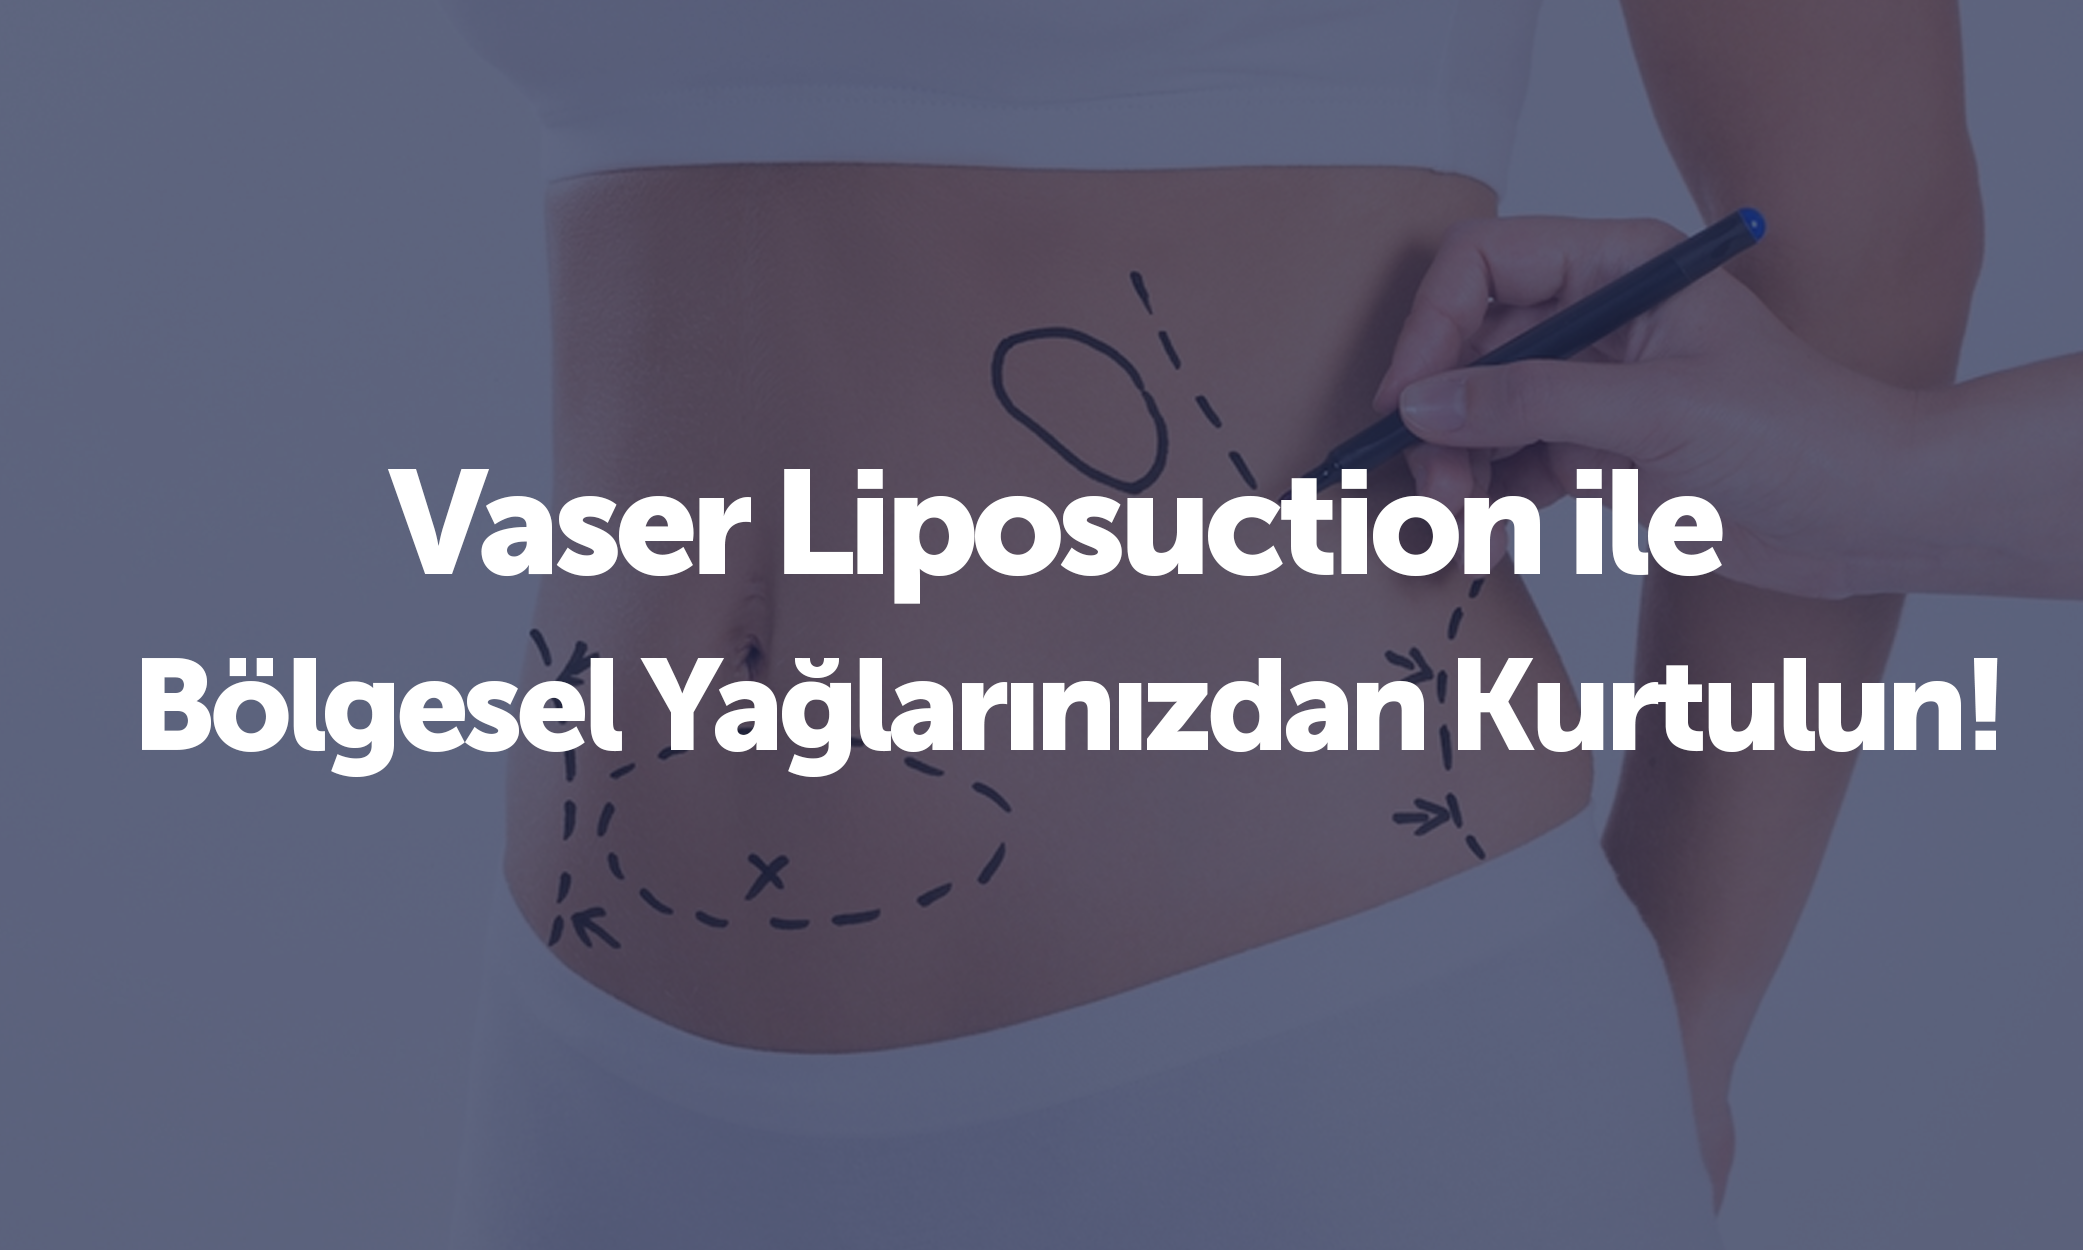 Vaser Liposuction ile Bölgesel Yağlarınızdan Kurtulun!